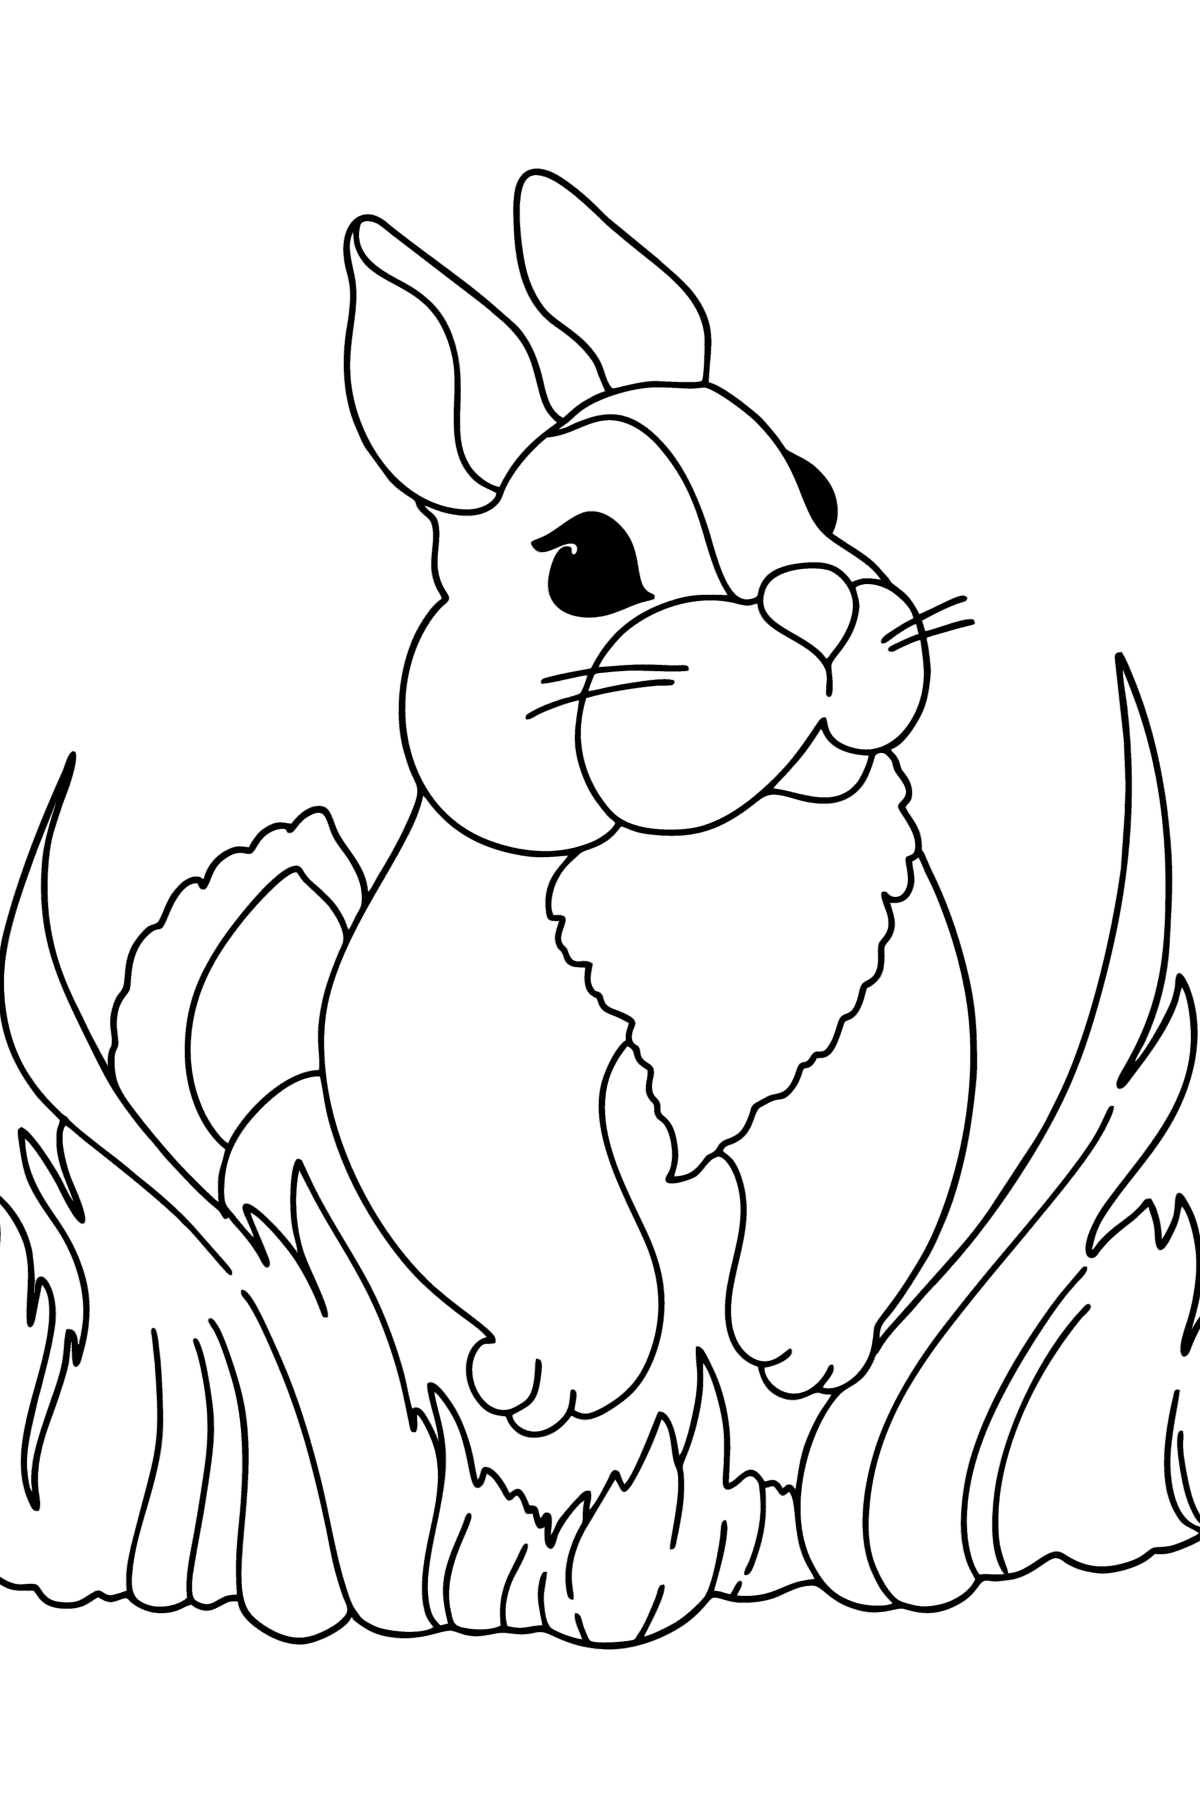 Desenho para colorir do coelhinho fofo - Imagens para Colorir para Crianças